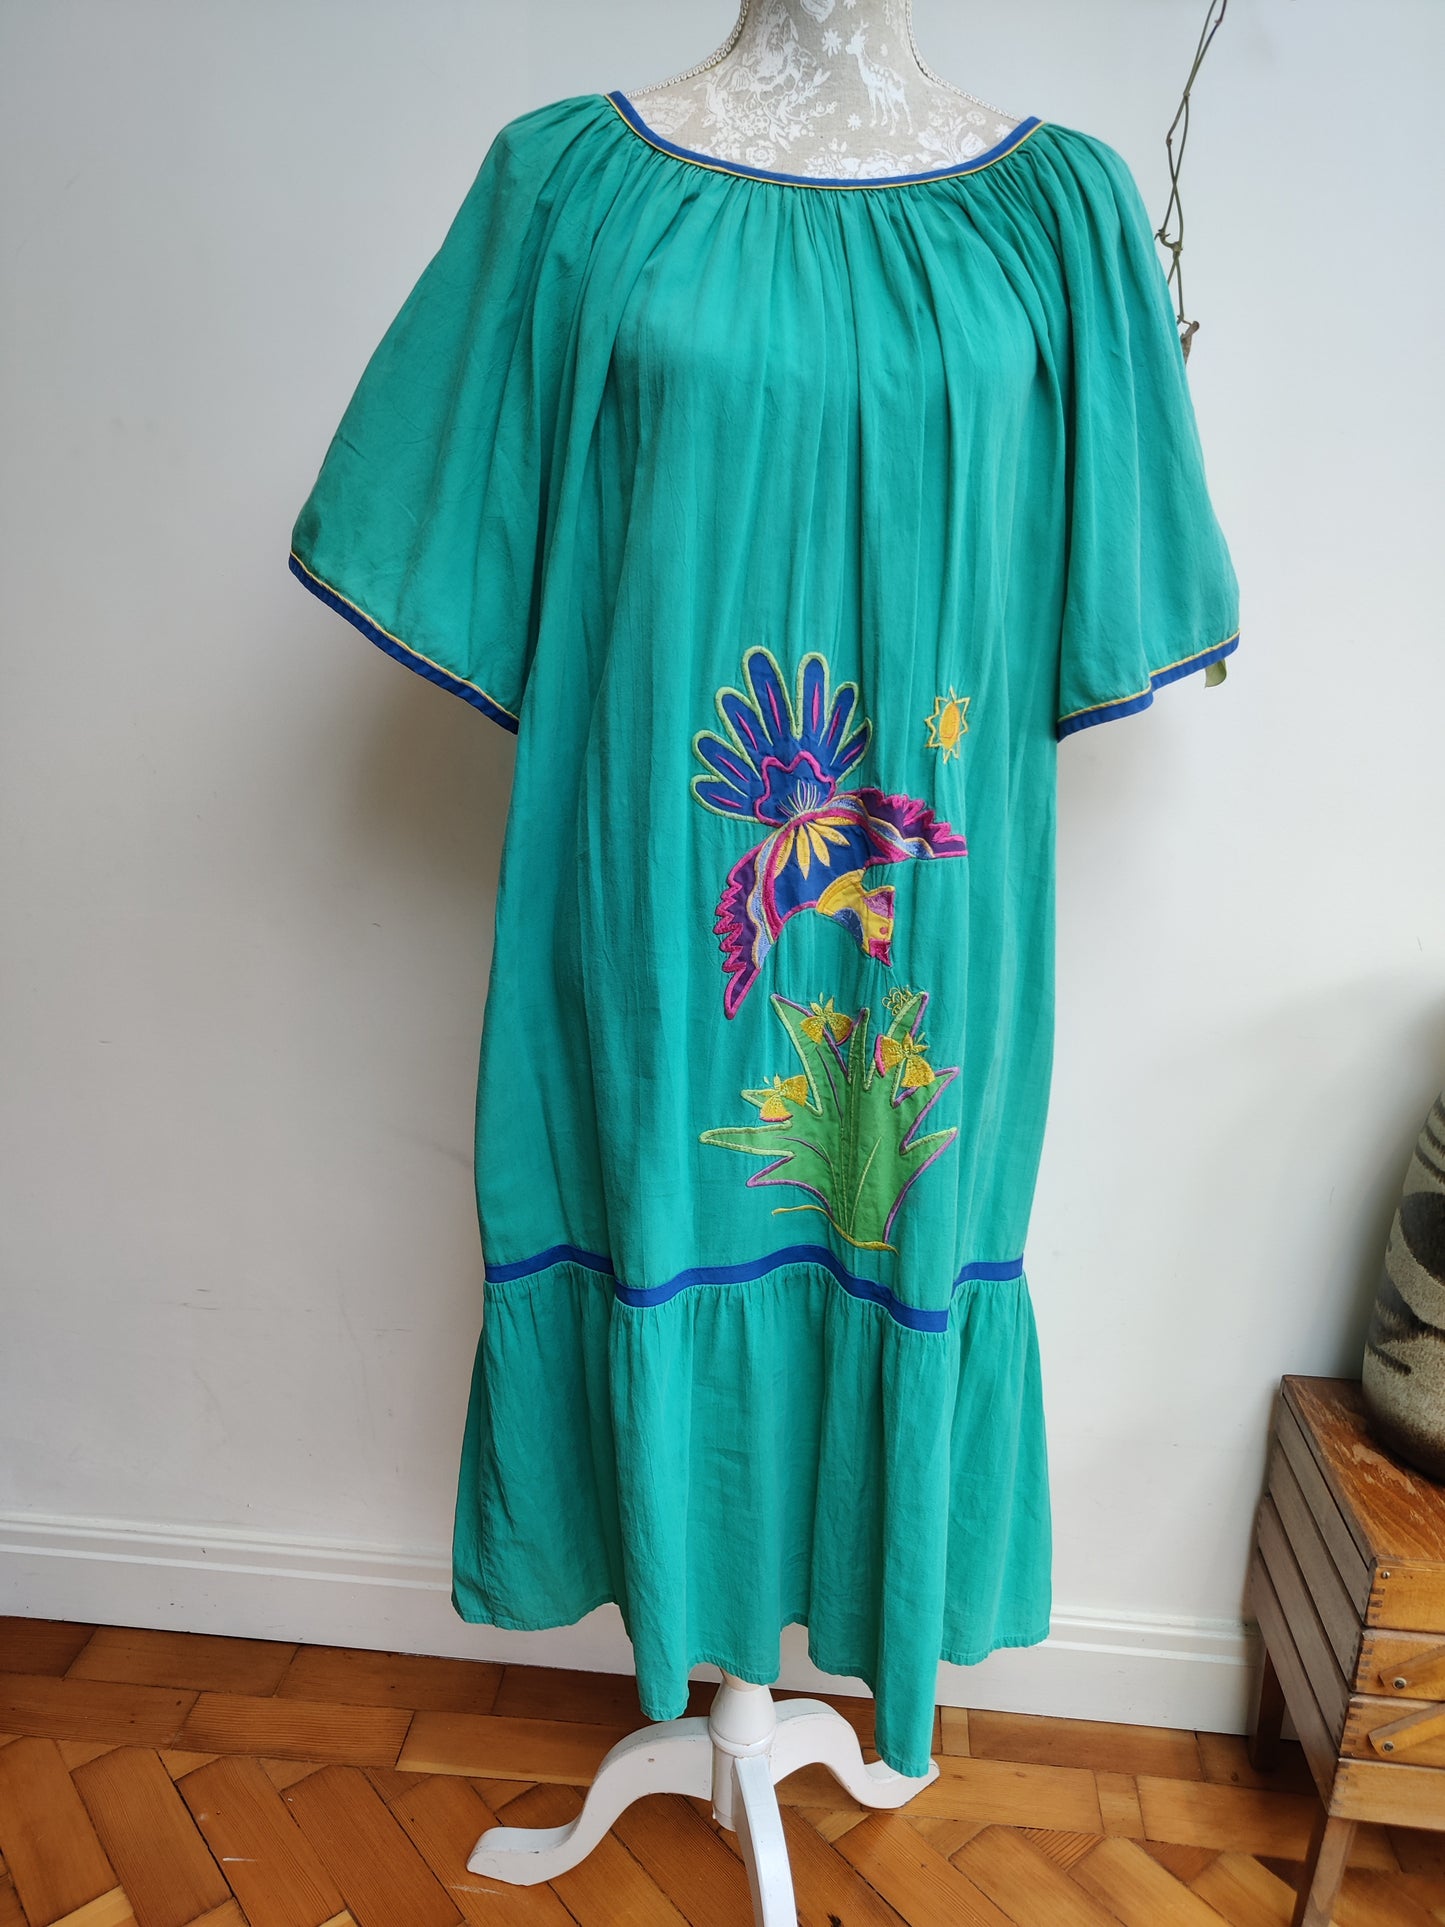 Summer smock dress size 12-18